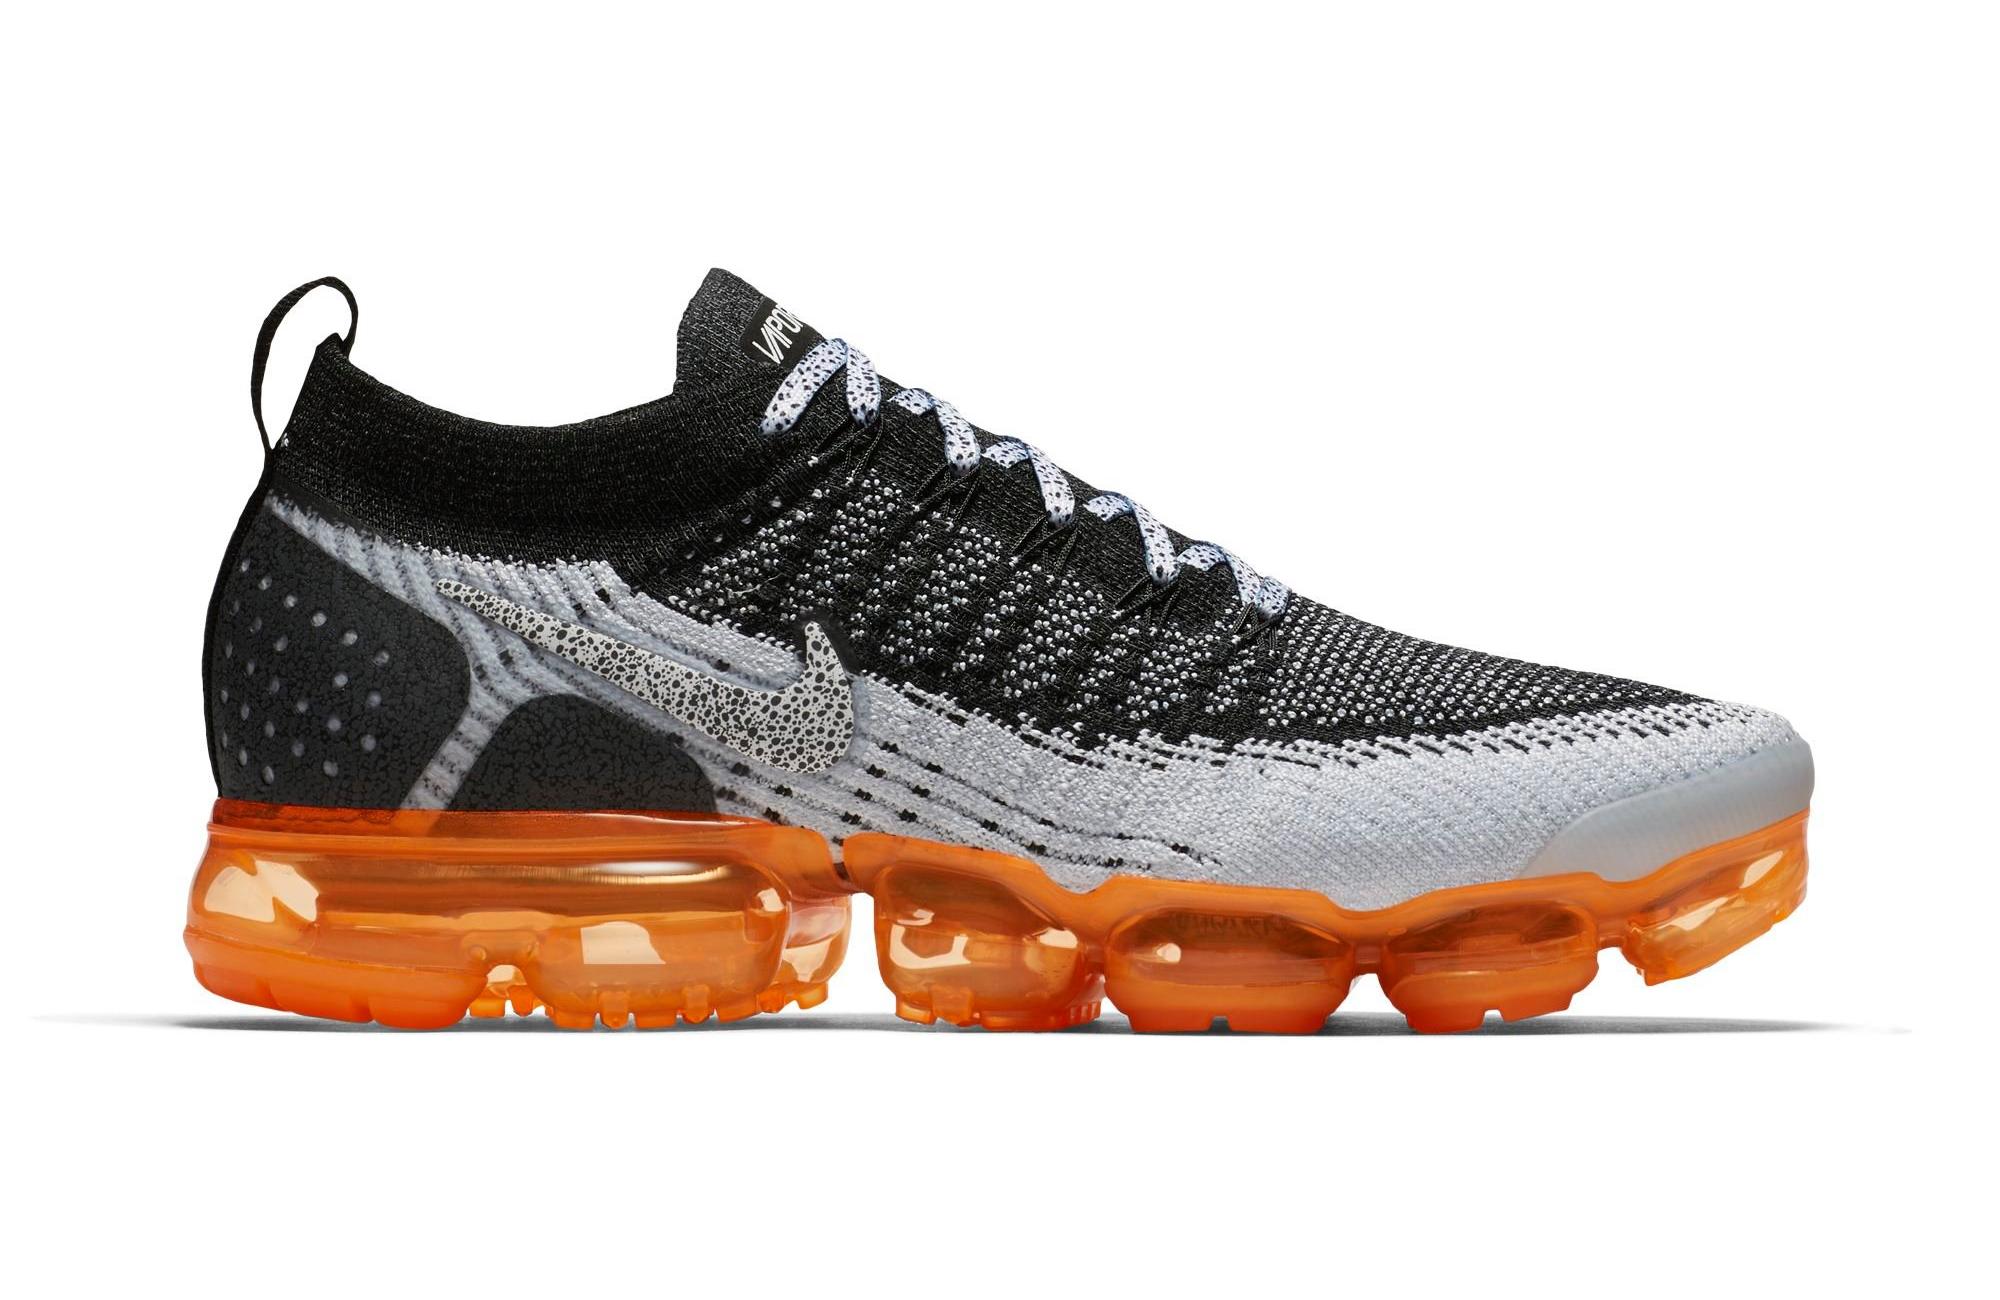 Sneakers Release – Nike Vapormax Flyknit 2 “Black/Orange” Men’s Shoe